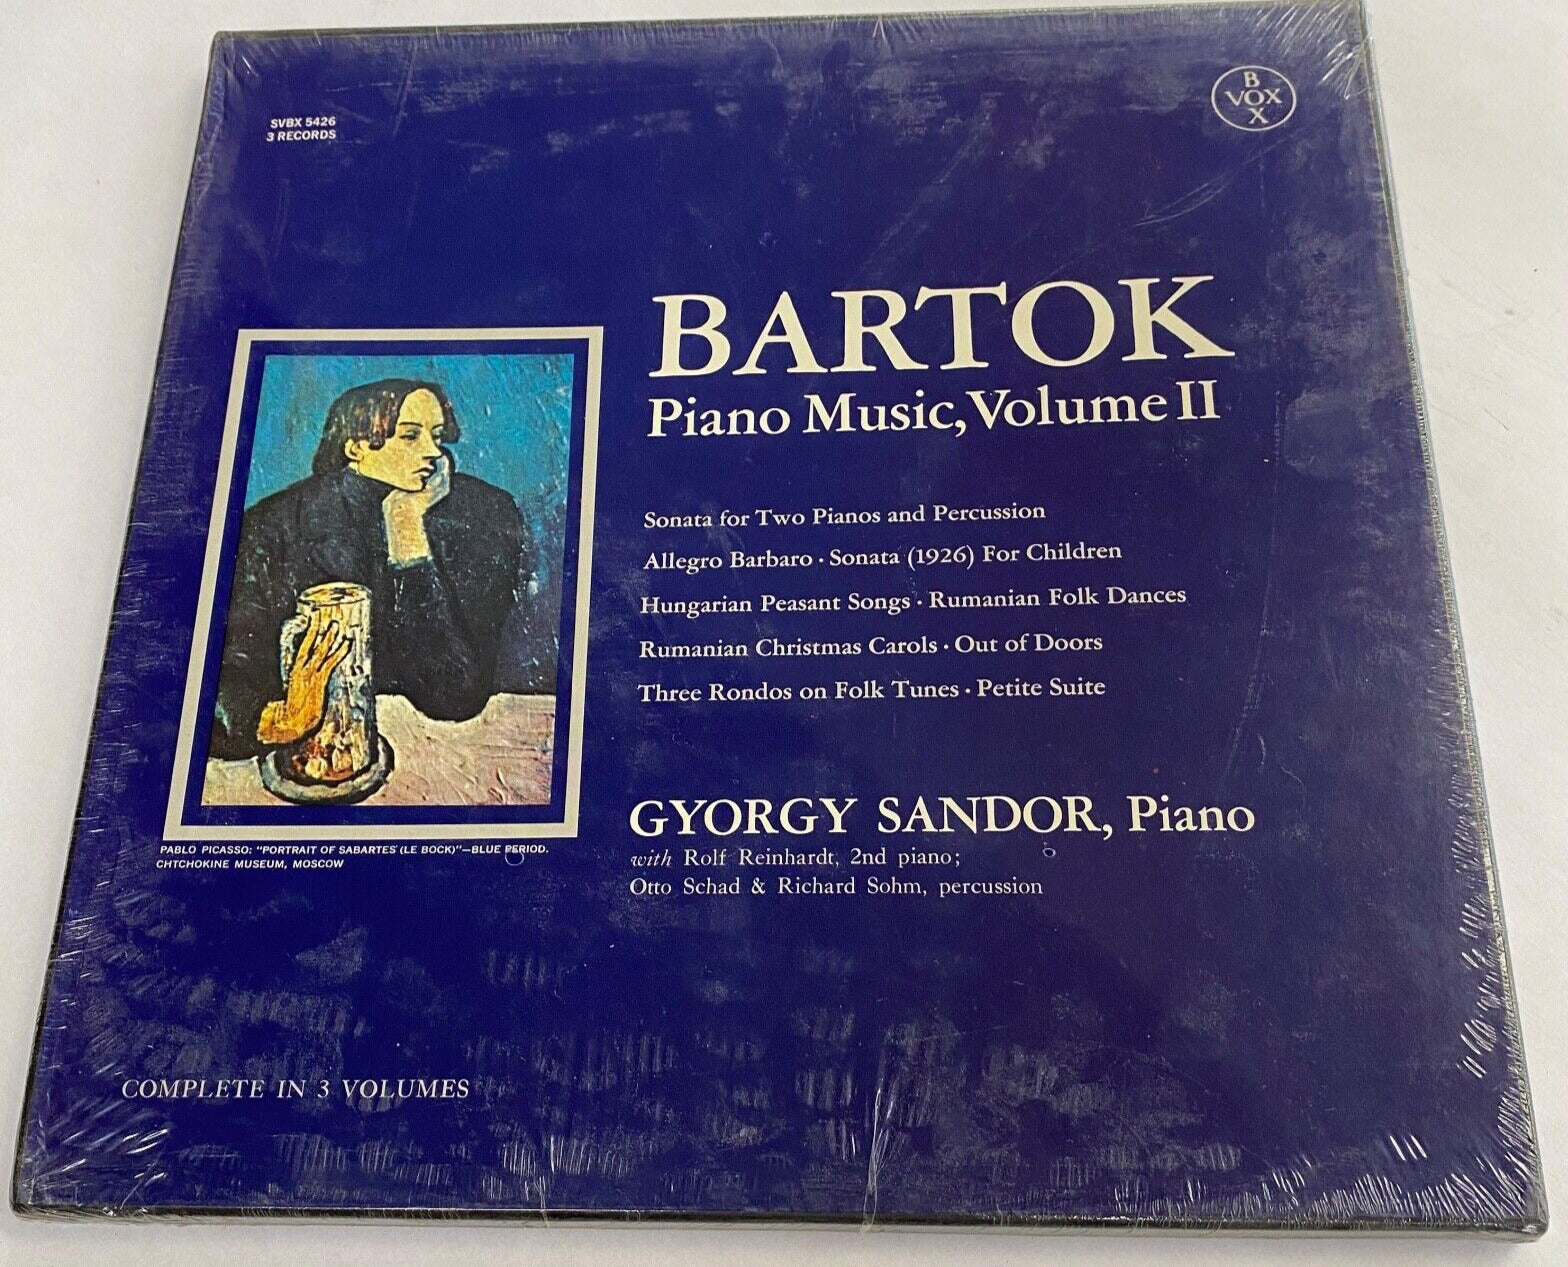 BARTOK Piano Music, Volume II Gyrogy Sandor, Piano